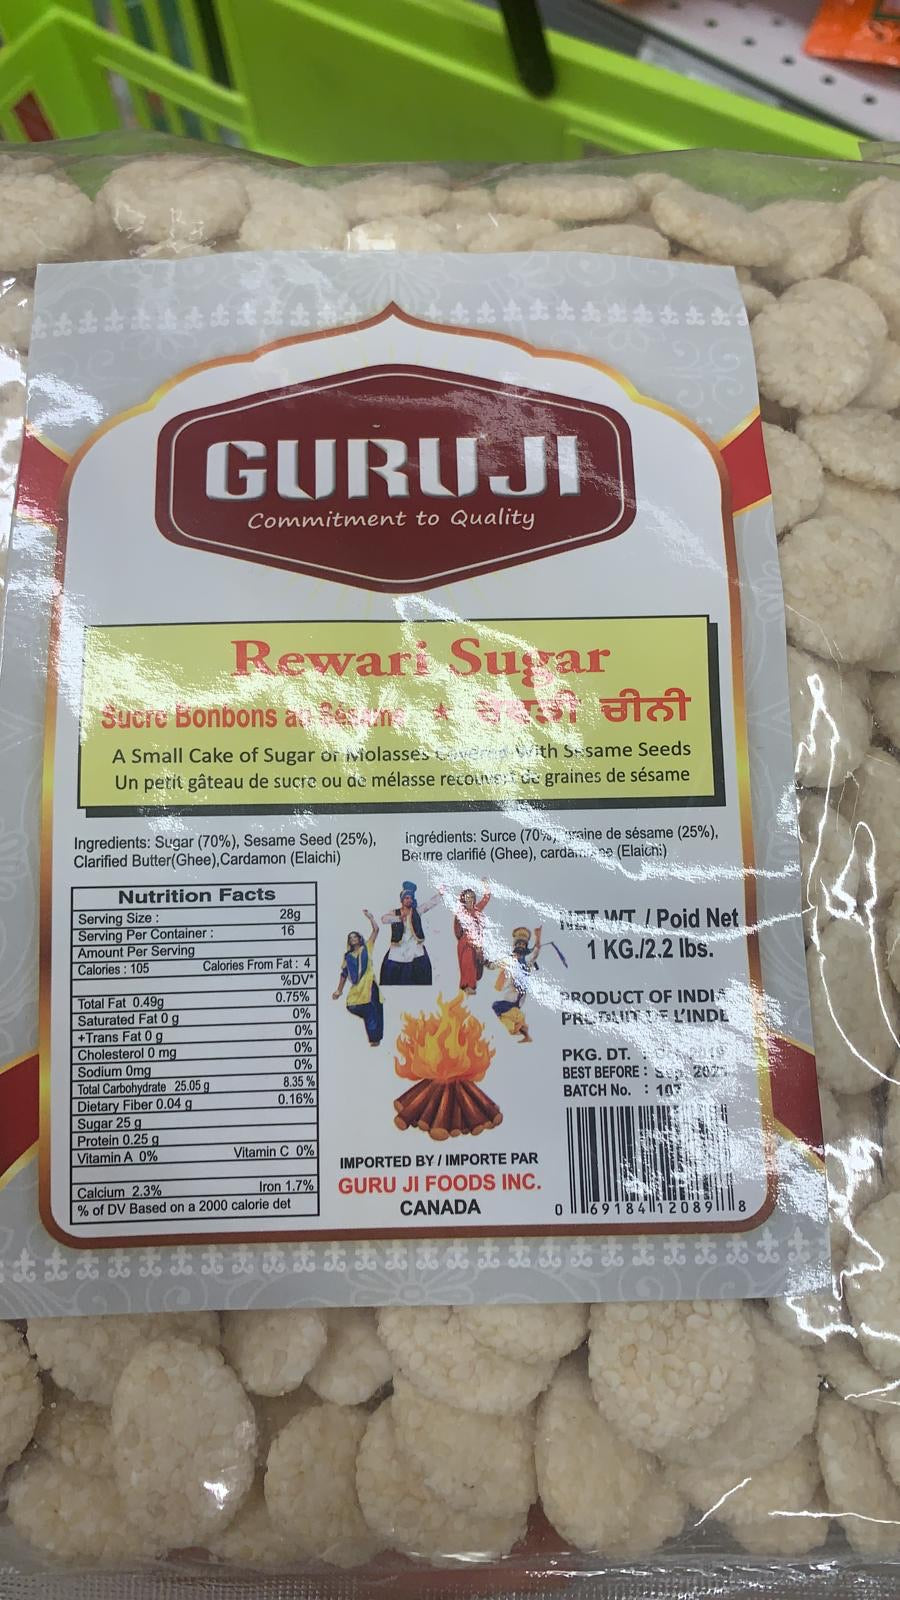 Rewdi Sugar - 1 Kg